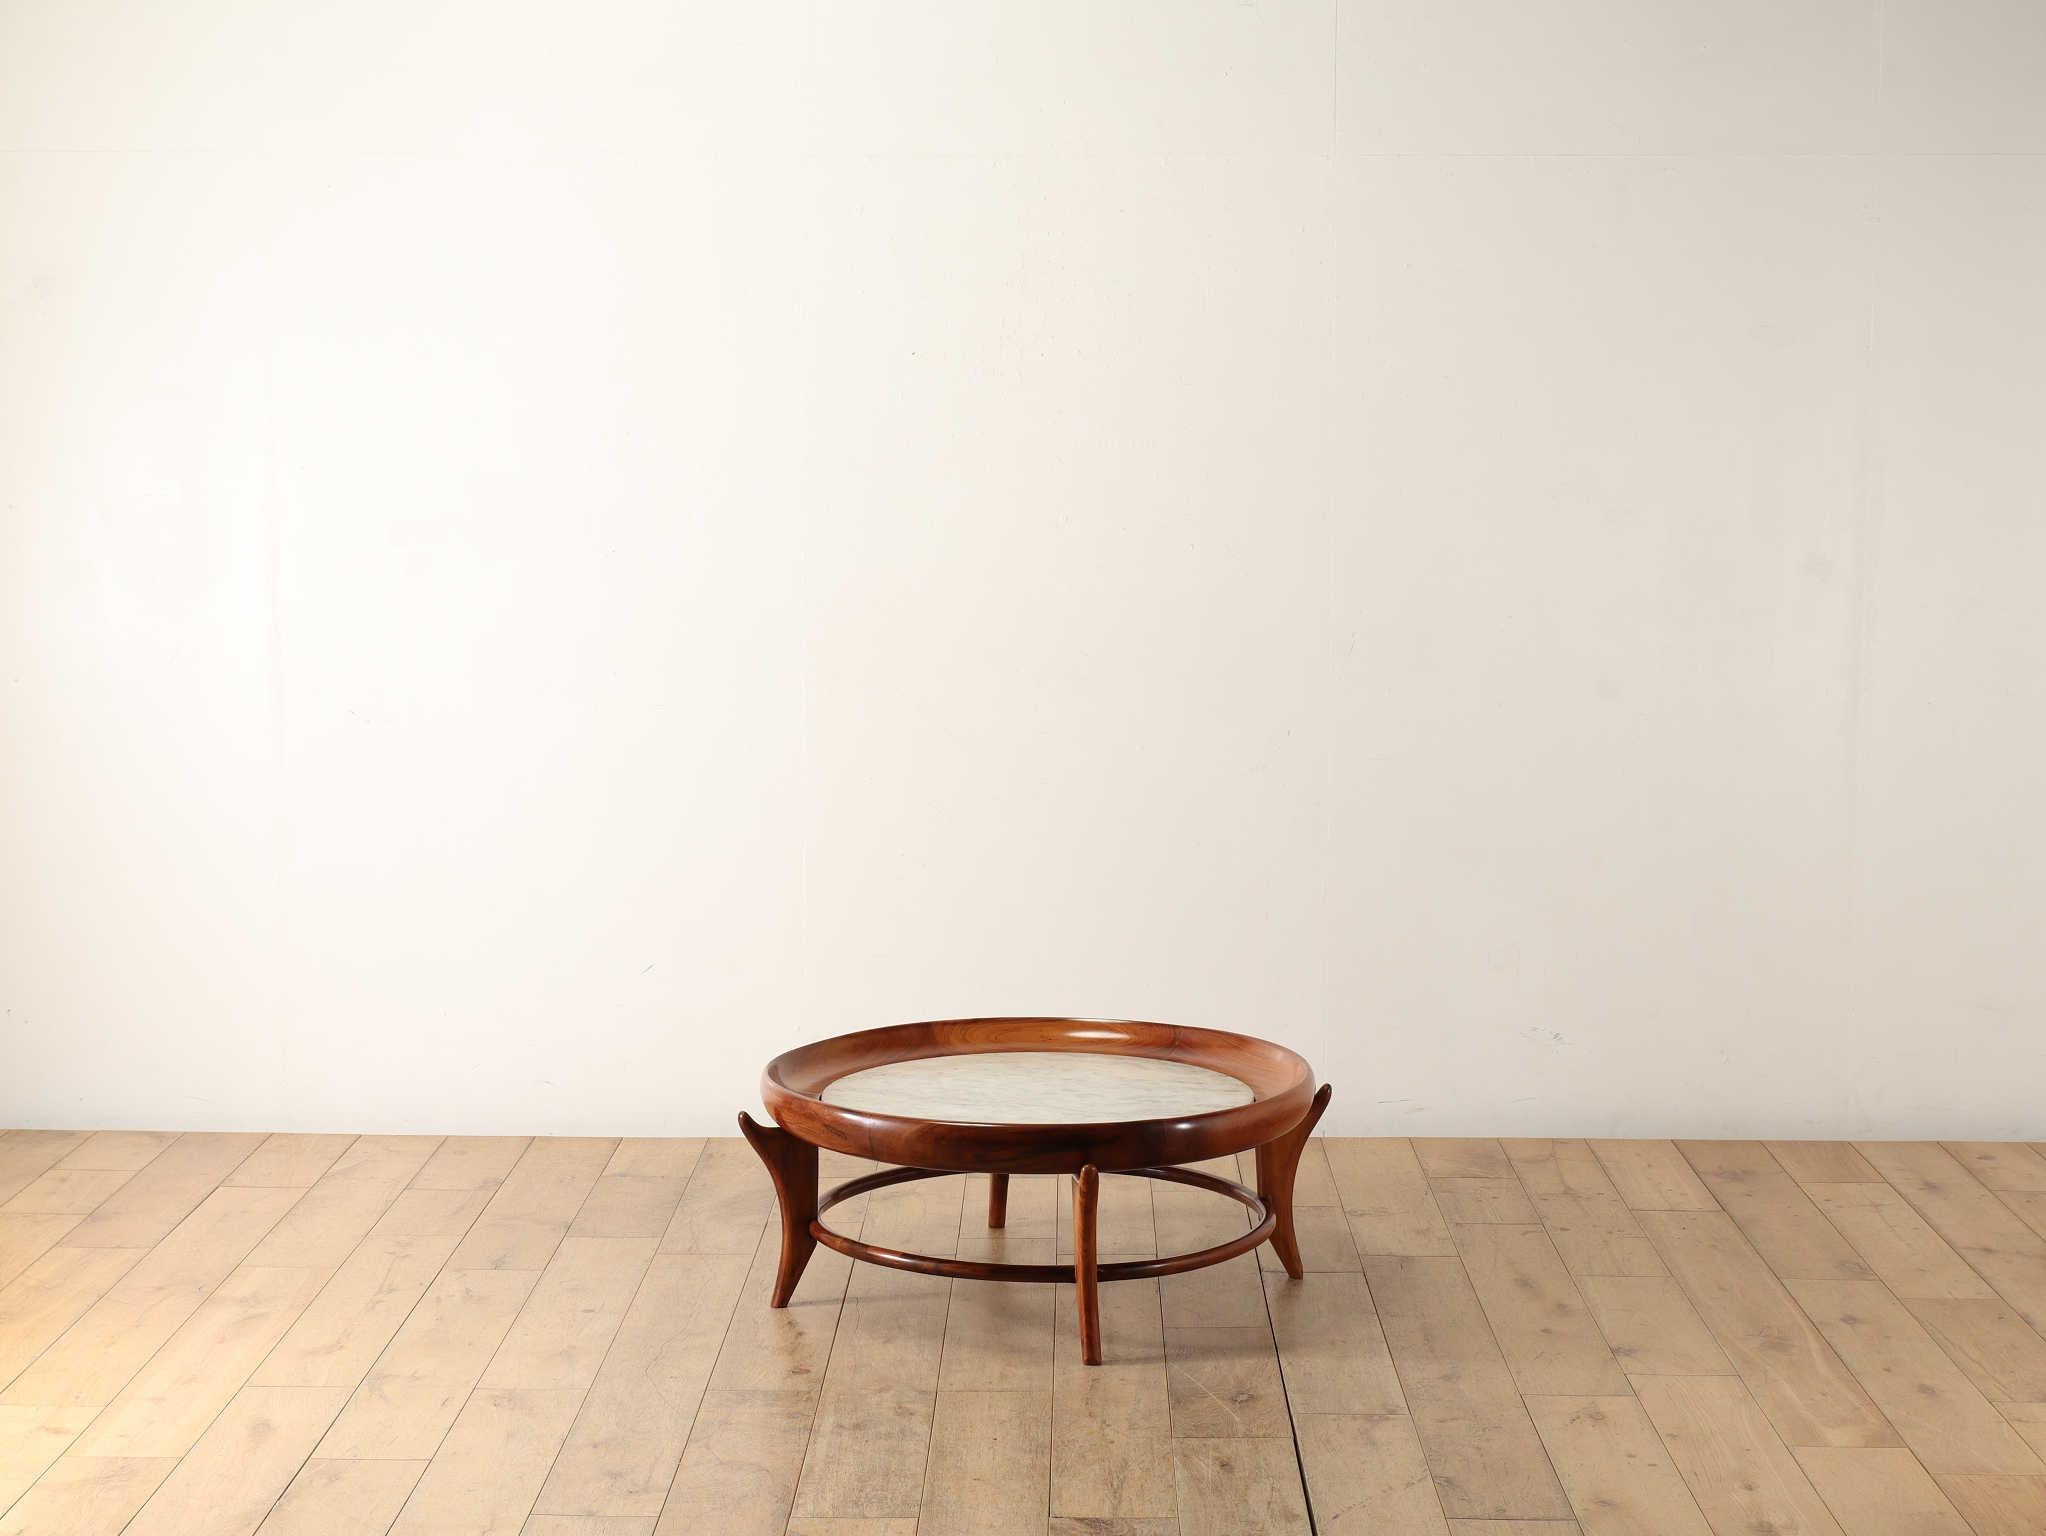 Cette table basse ronde a été fabriquée au Brésil et est composée de bois de Caviuna et de marbre blanc. Le bois de caviuna est connu pour être un matériau très utilisé dans la fabrication de meubles au cours de cette période brésilienne du milieu